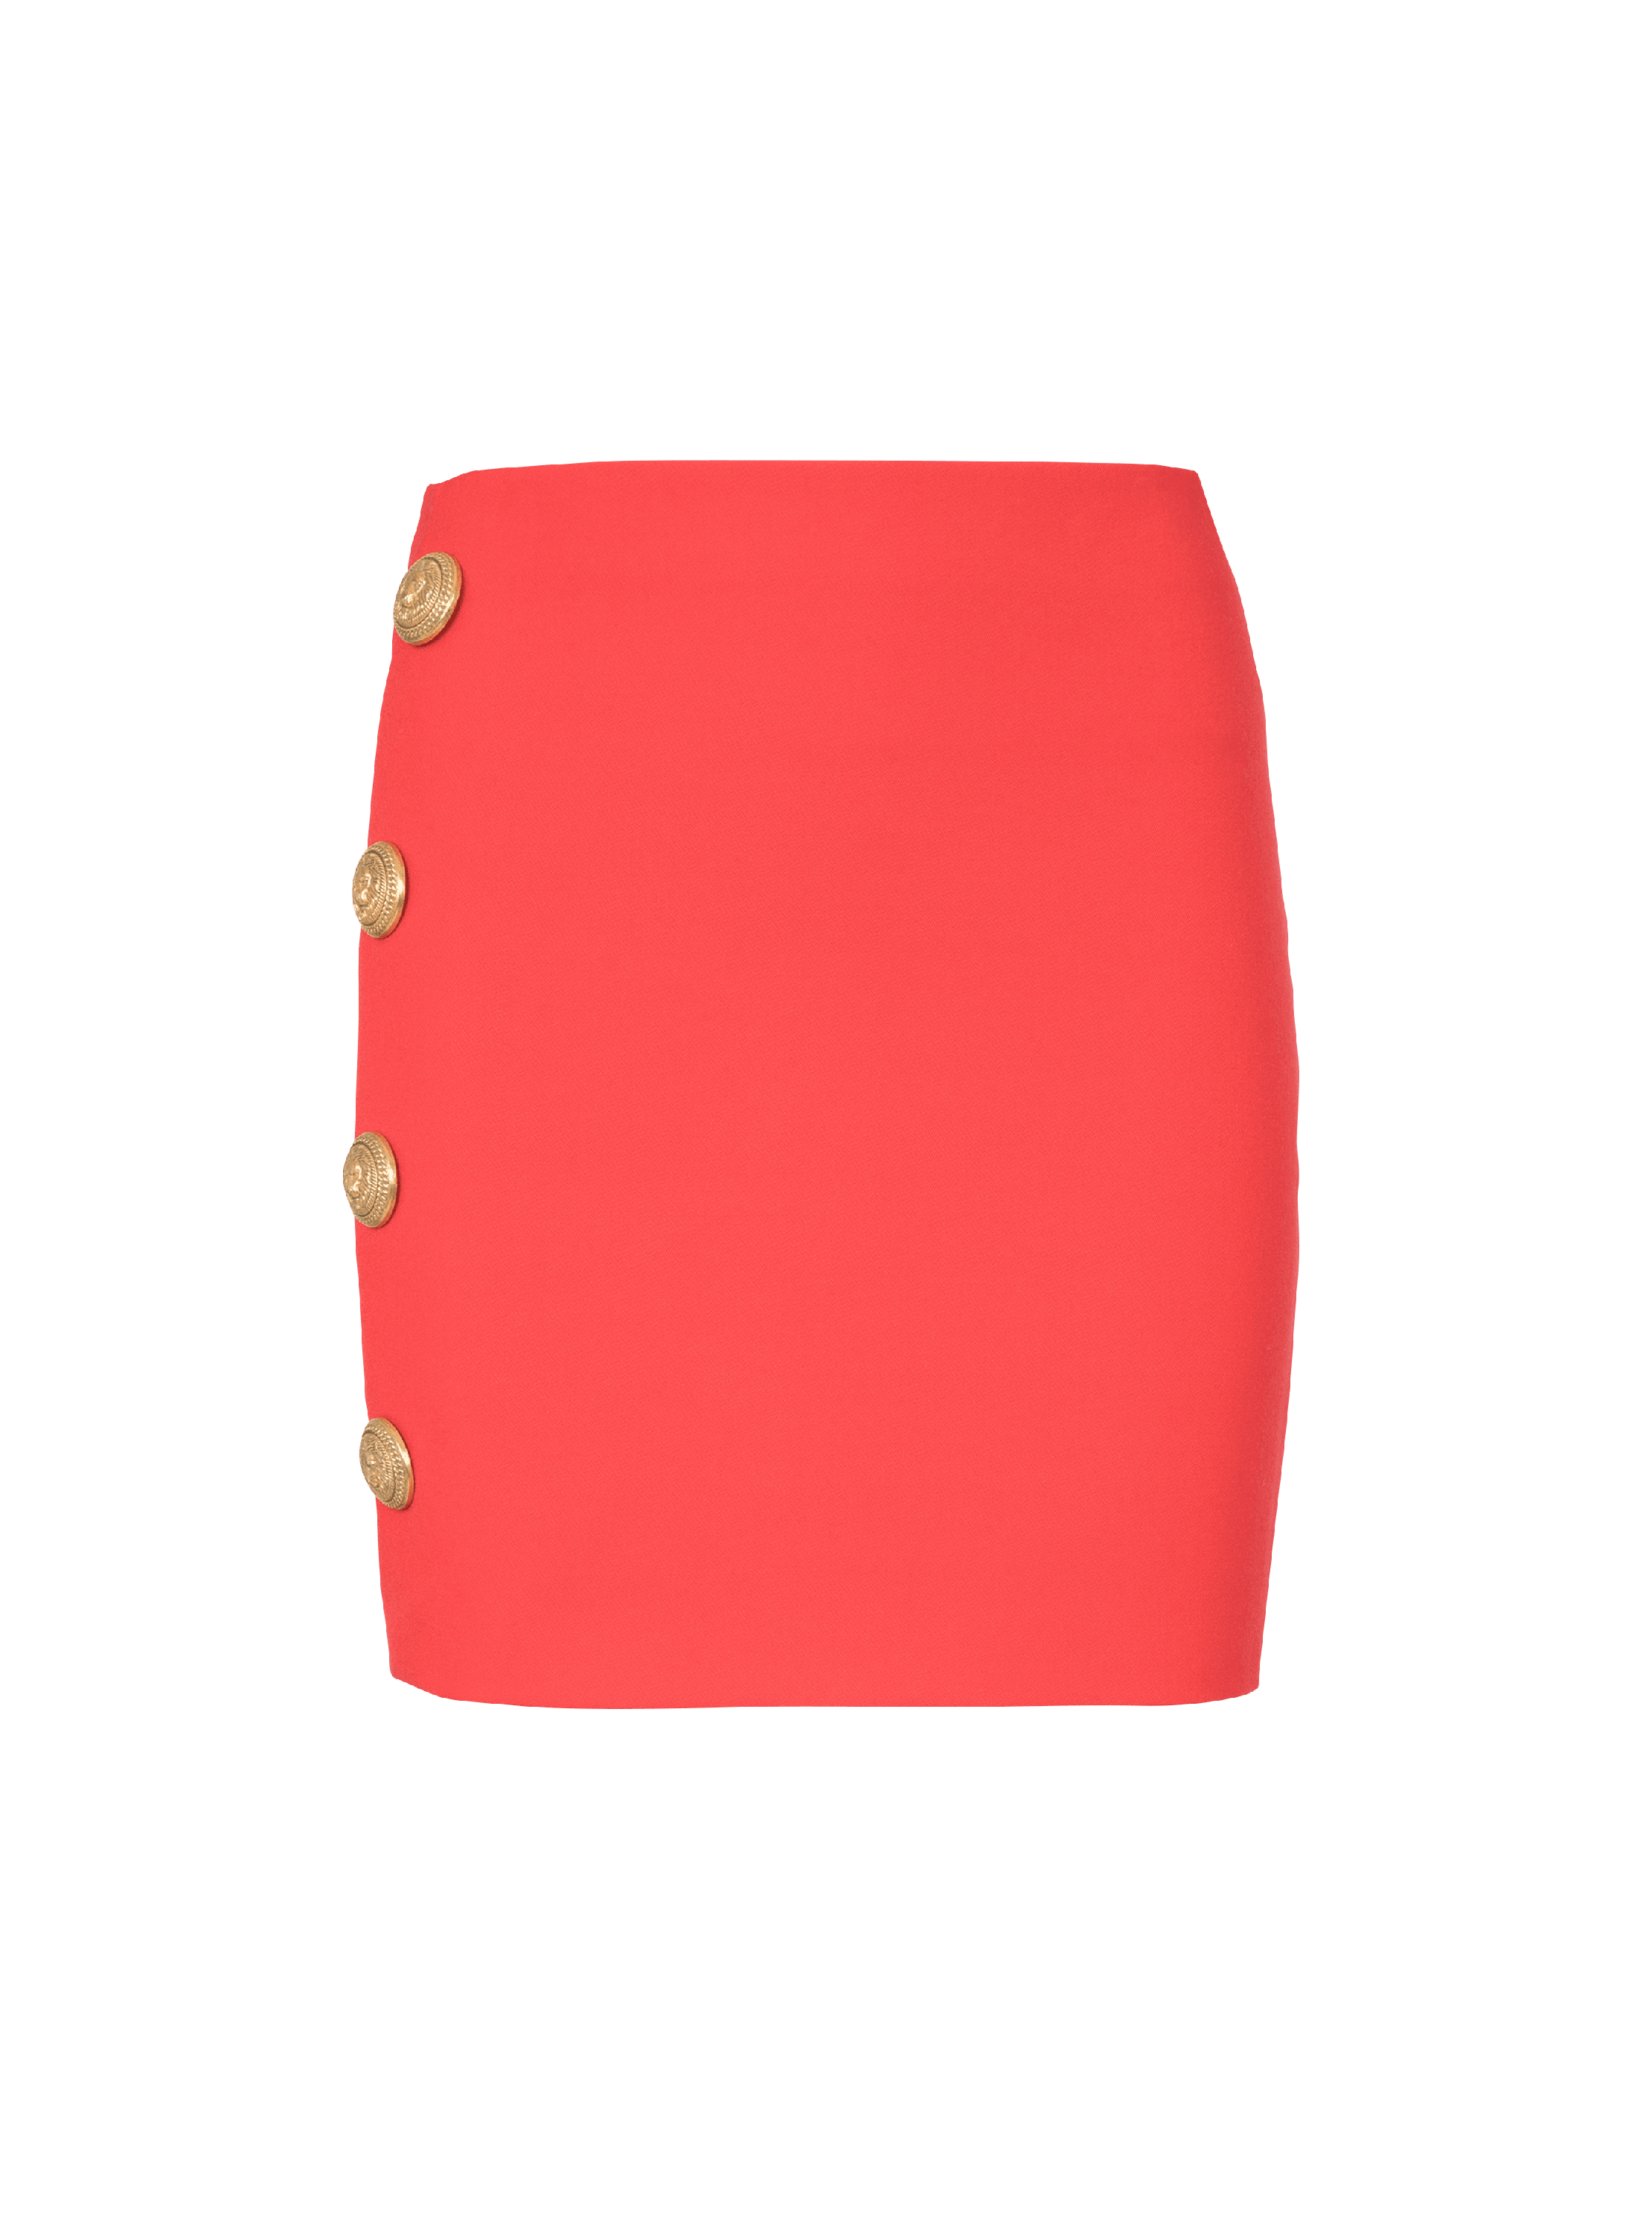 Short asymmetrical skirt